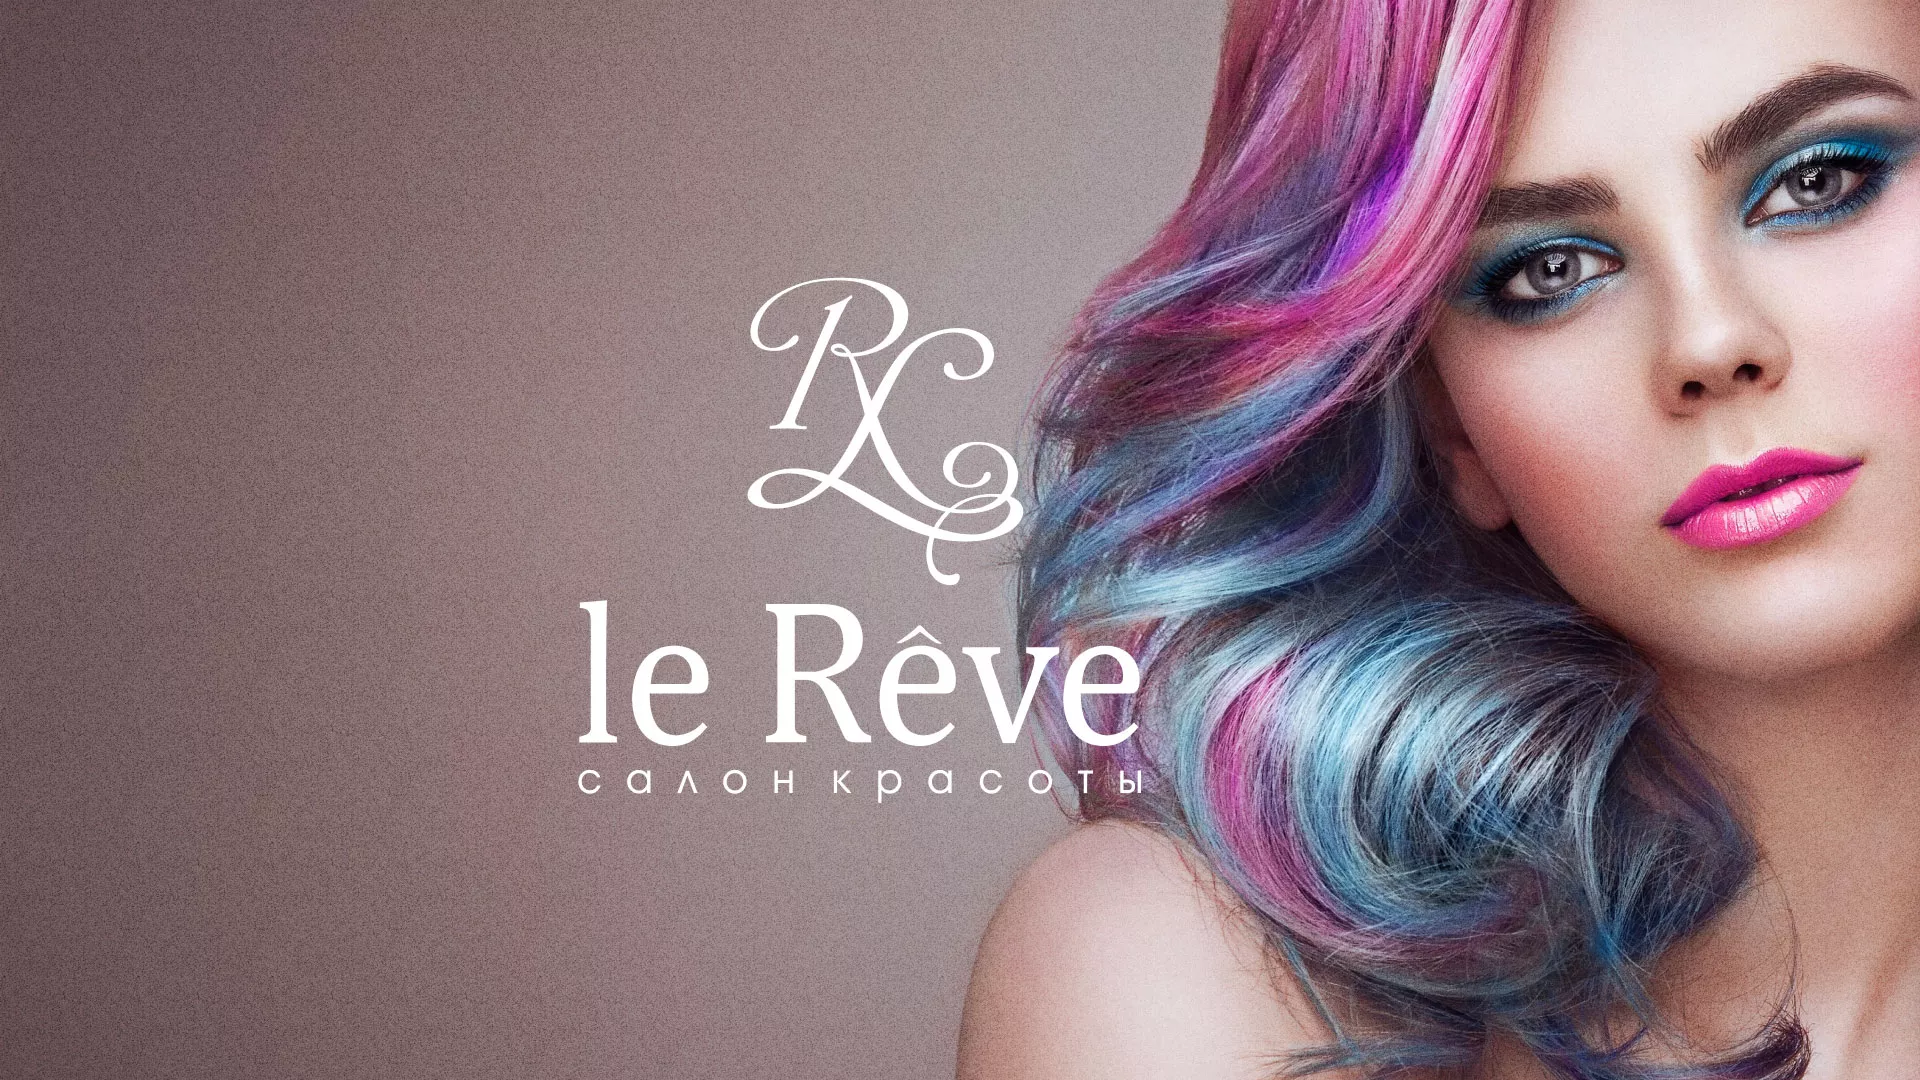 Создание сайта для салона красоты «Le Reve» в Закаменске